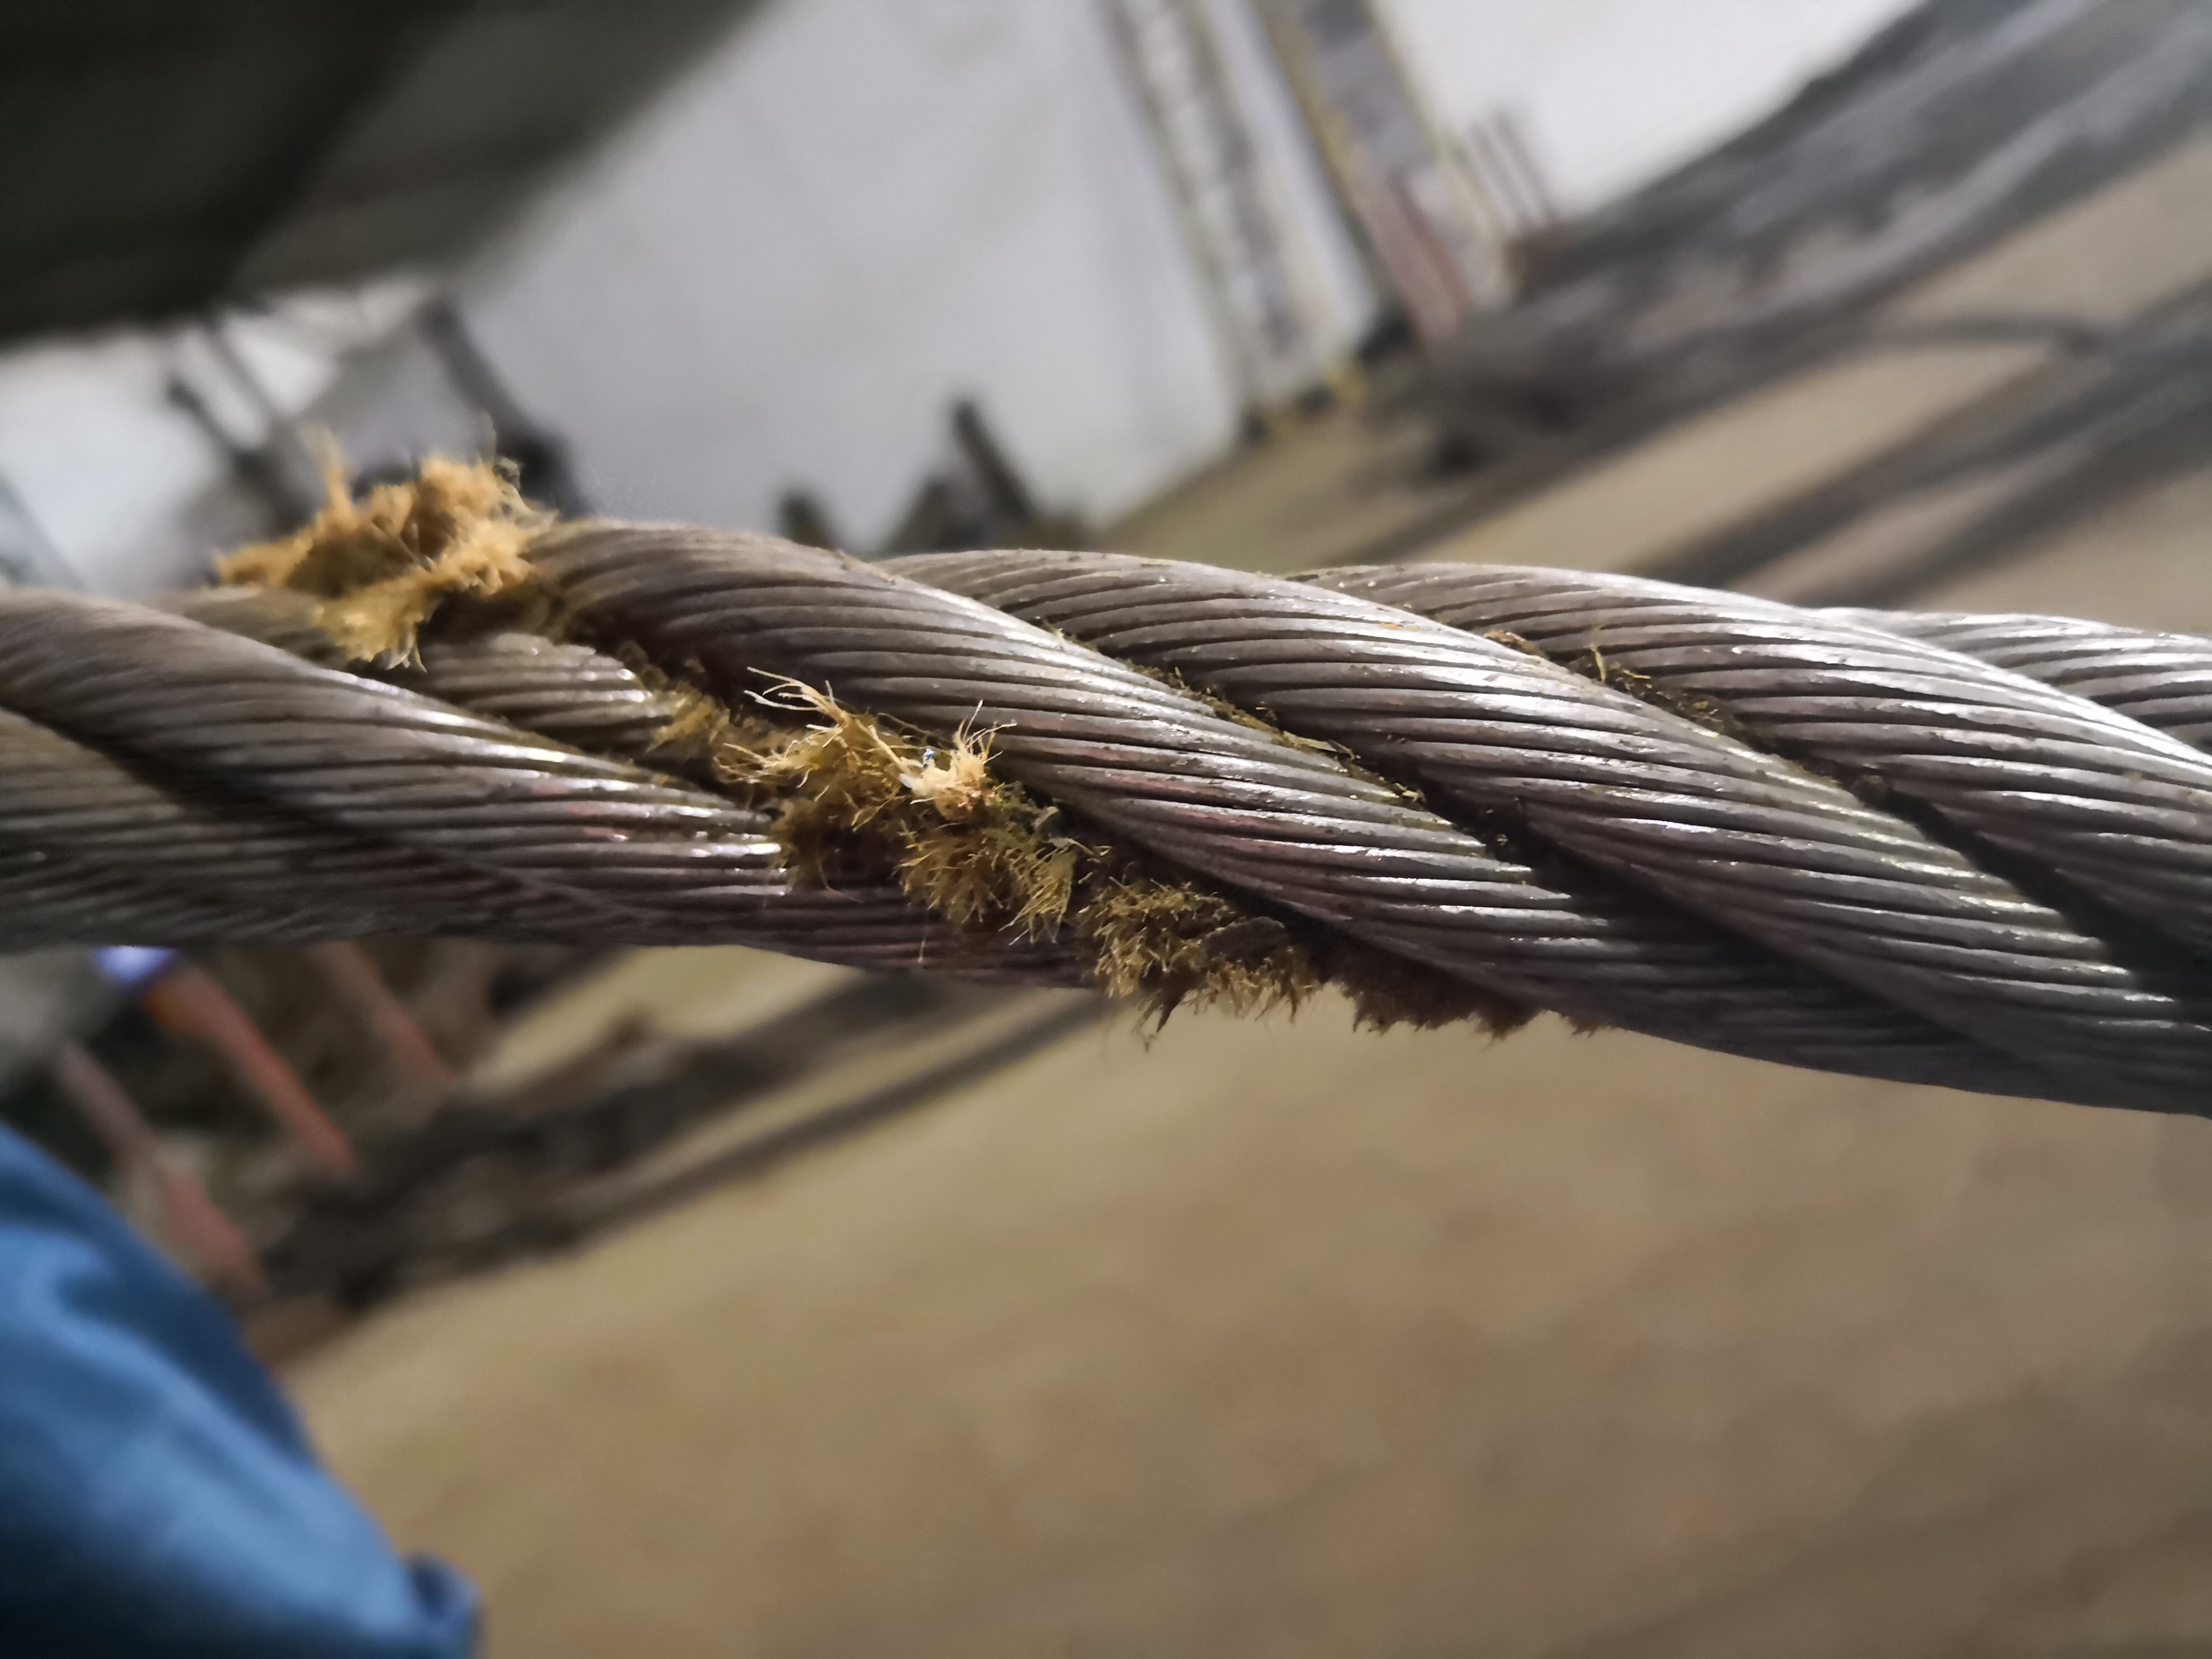 塔吊钢丝绳锈蚀如何处理?怎么正确保养钢丝绳?